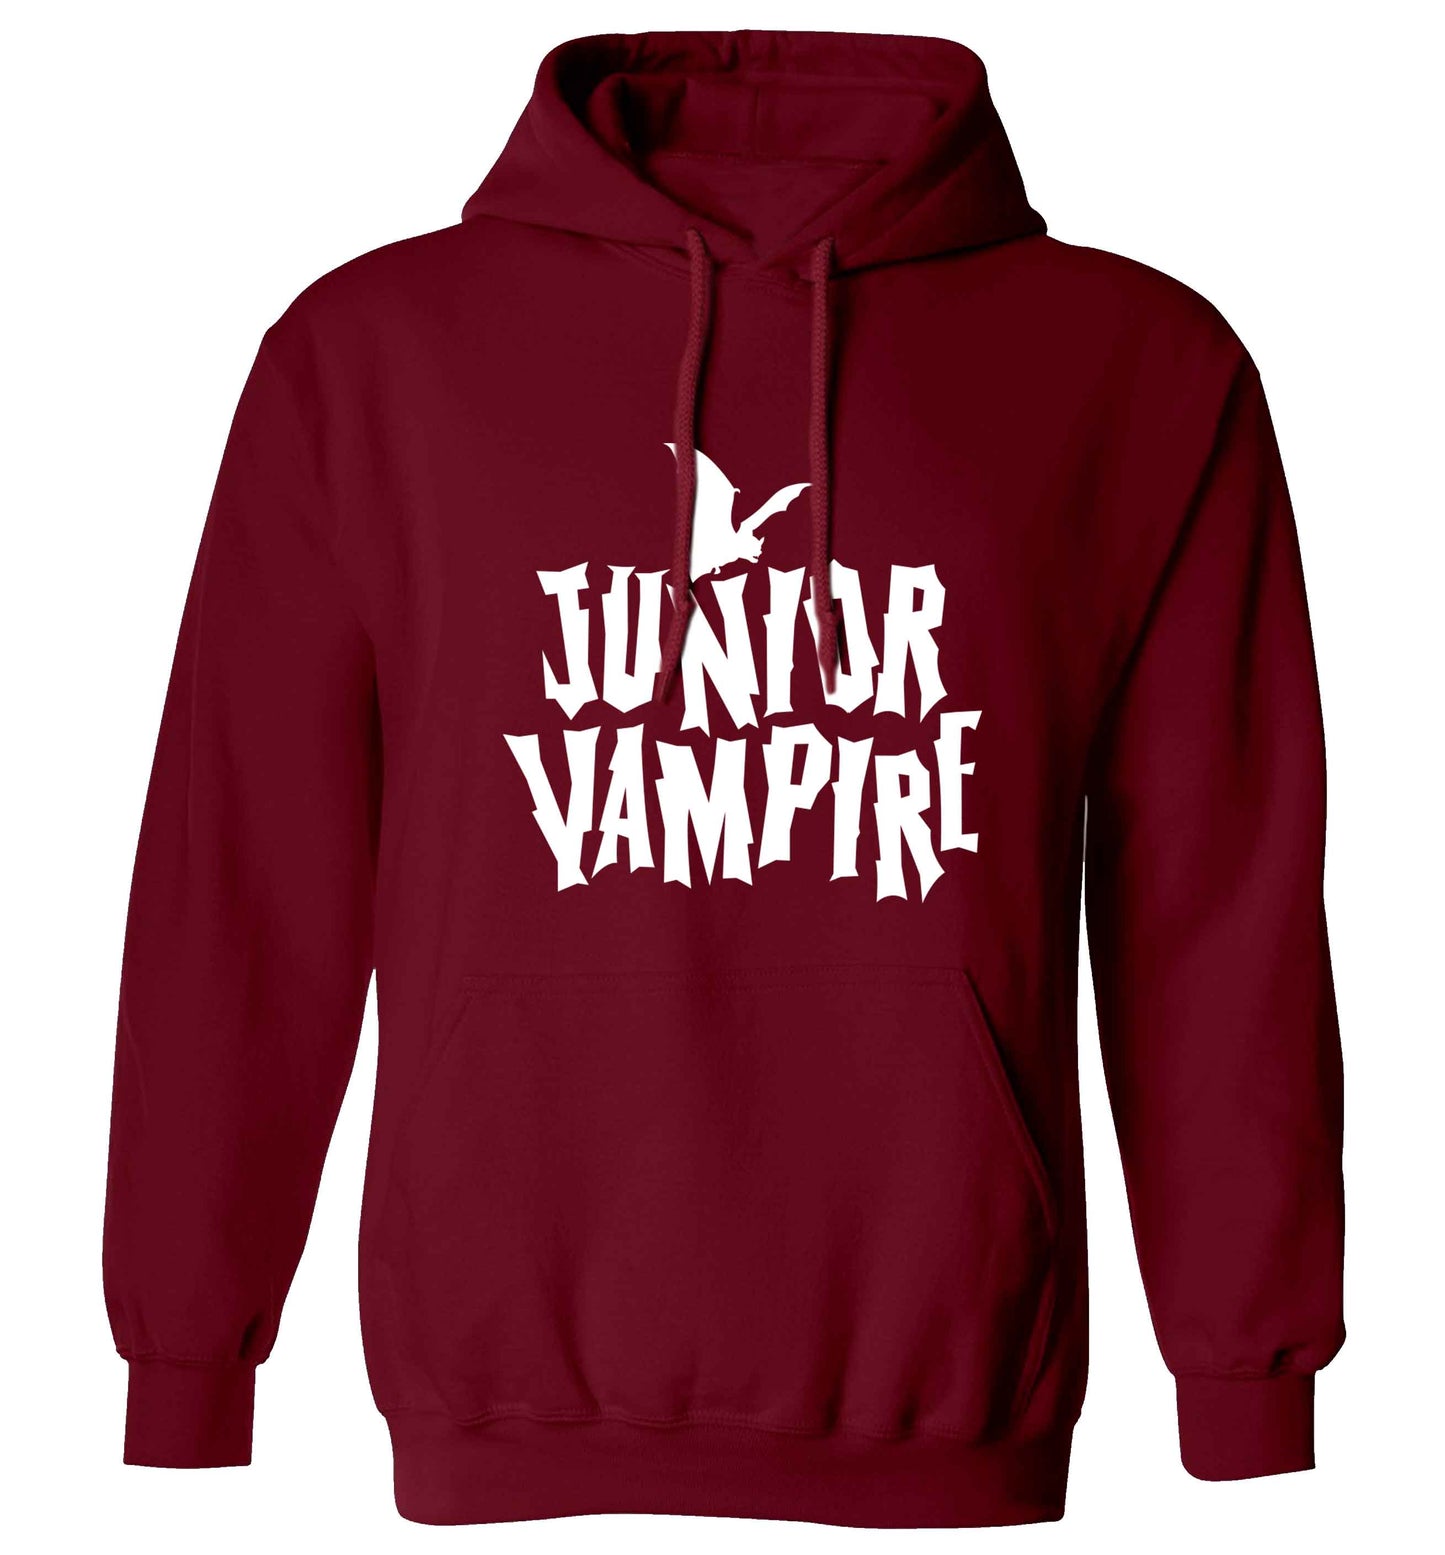 Junior vampire adults unisex maroon hoodie 2XL